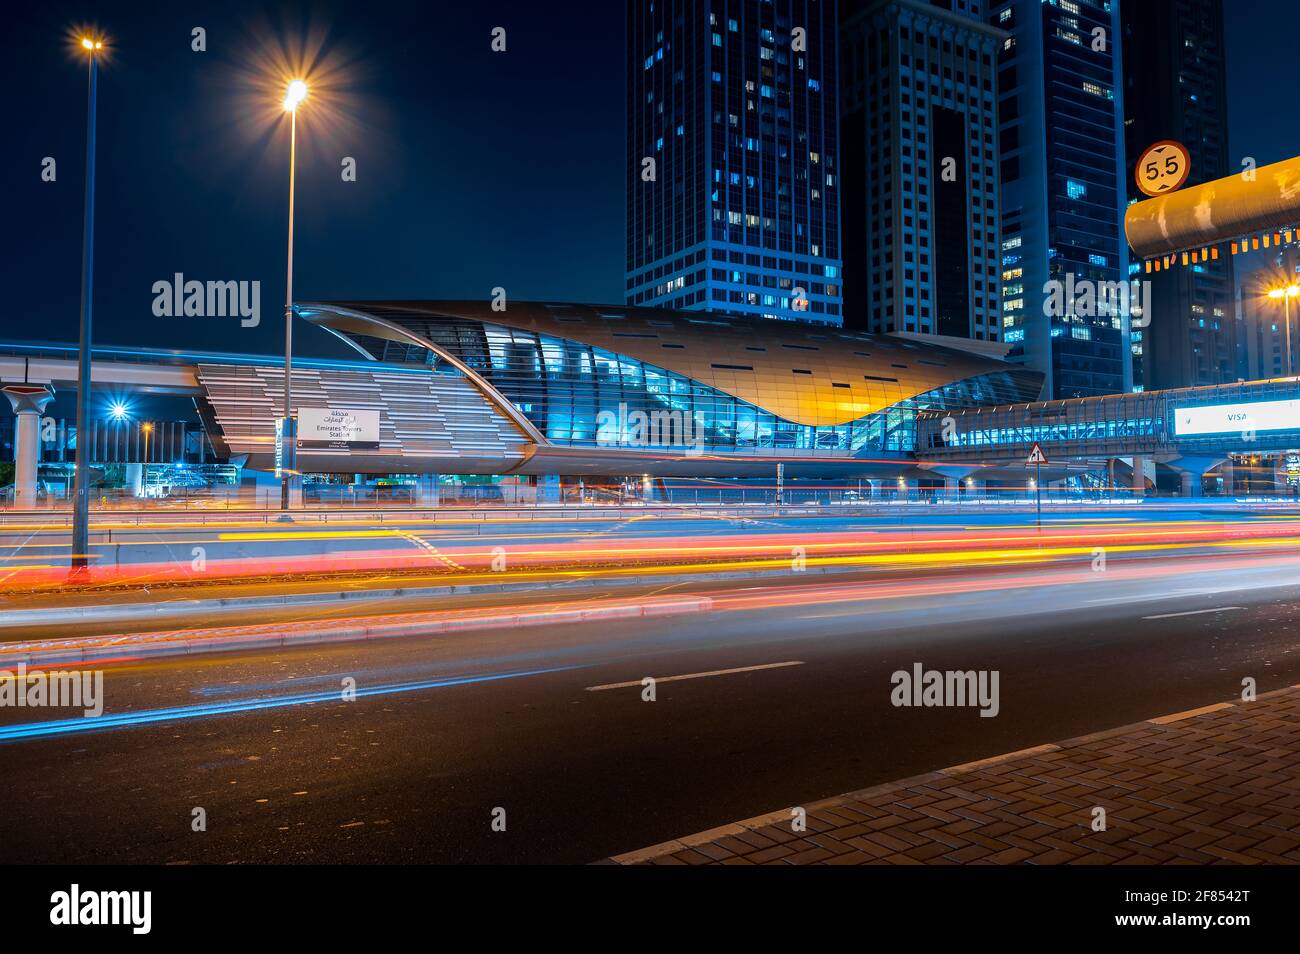 Dubai, Vereinigte Arabische Emirate - 31. März 2021: Die U-Bahn-Station Dubai in der Innenstadt von Dubai befindet sich auf der Sheikh Zayed Road, einer der verkehrsreichsten Autobahnen in den Vereinigten Arabischen Emiraten Stockfoto